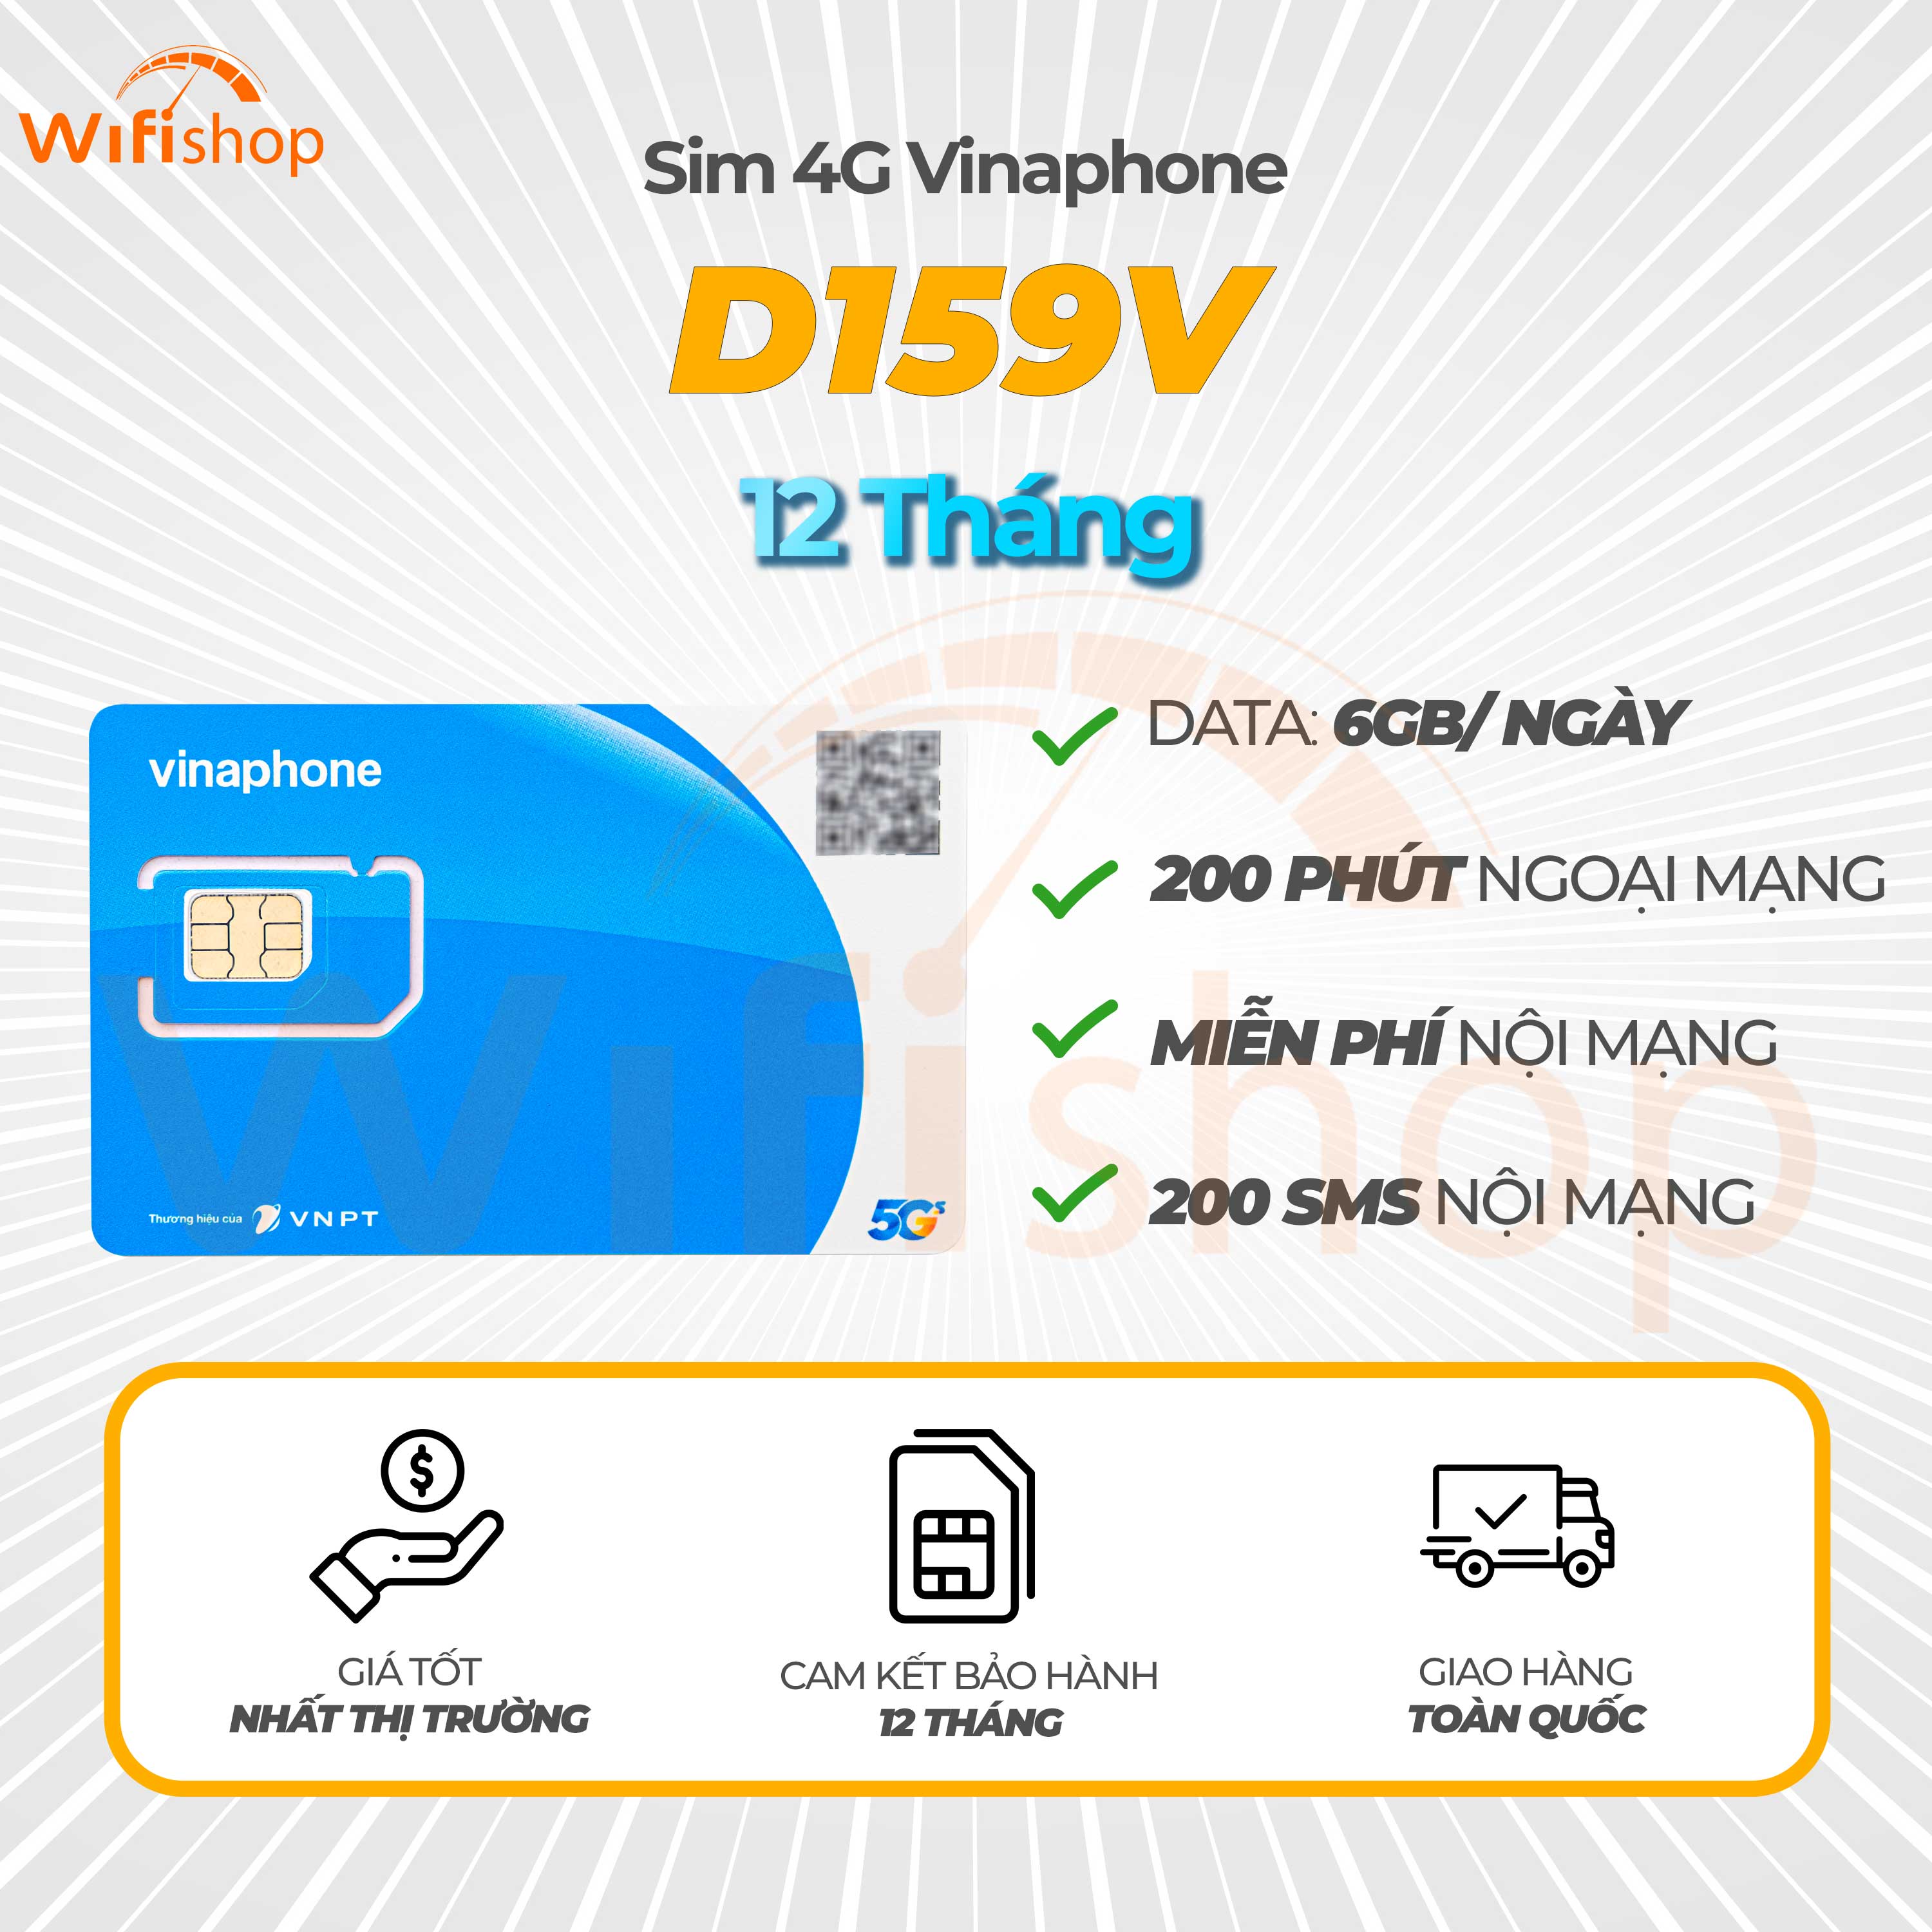 SIM 5G Vinaphone D159V 6GB/Ngày, Miễn Phí Nội Mạng, 200 Phút Ngoại Mạng, Trọn Gói 12 Tháng